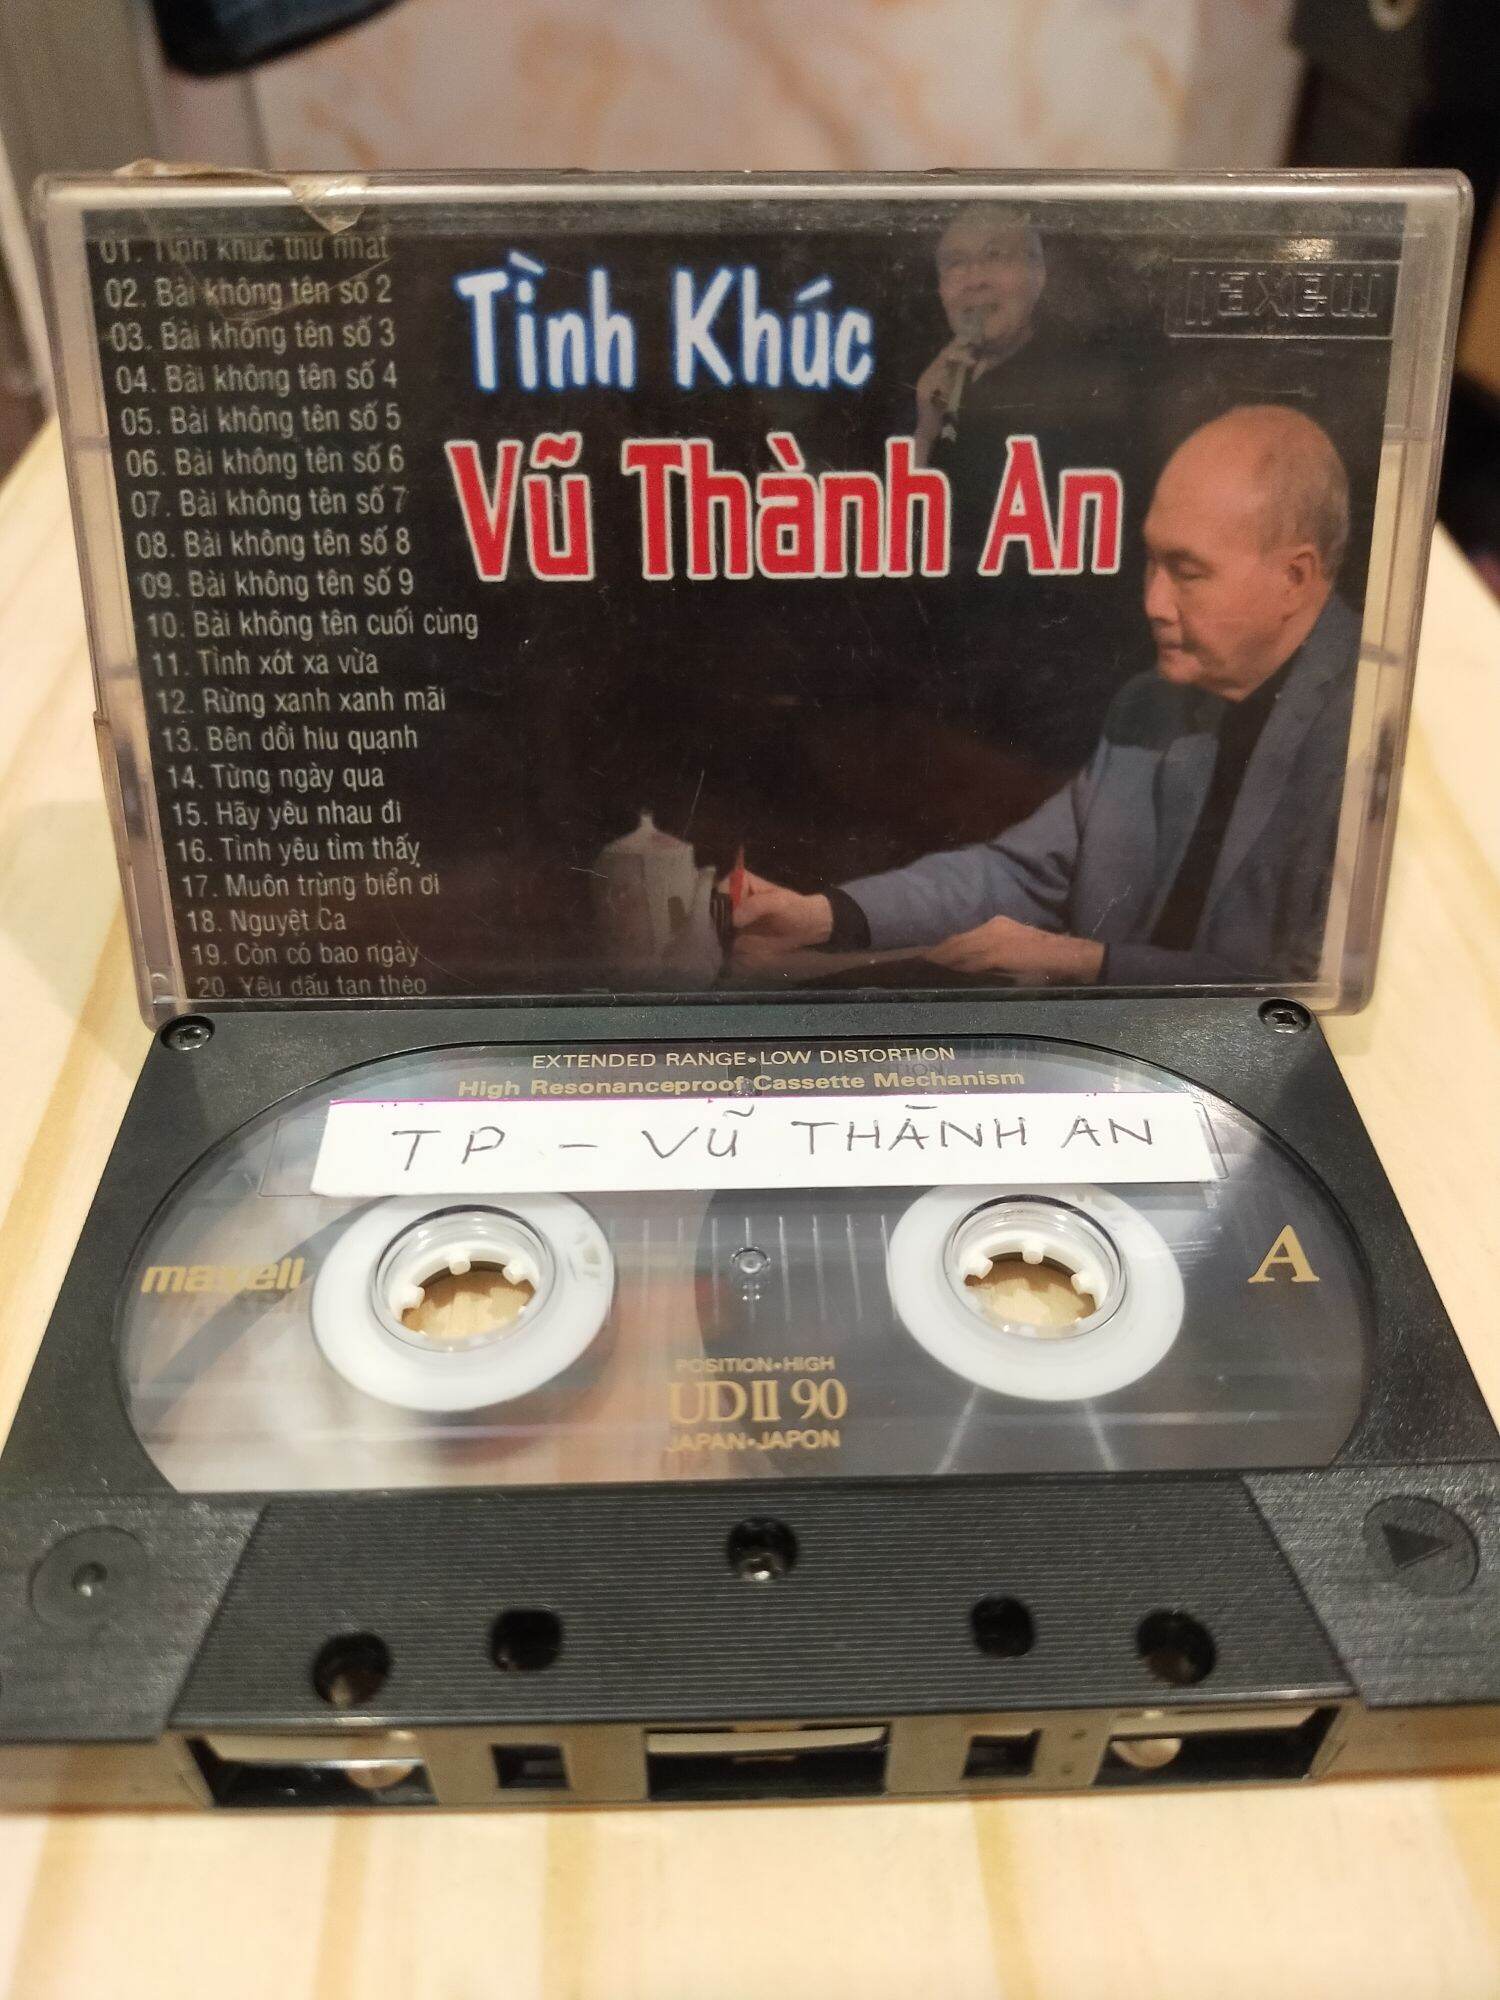 1 băng cassette maxell UD 2 tình khúc Vũ Thành An( lưu ý: đây là băng cũ